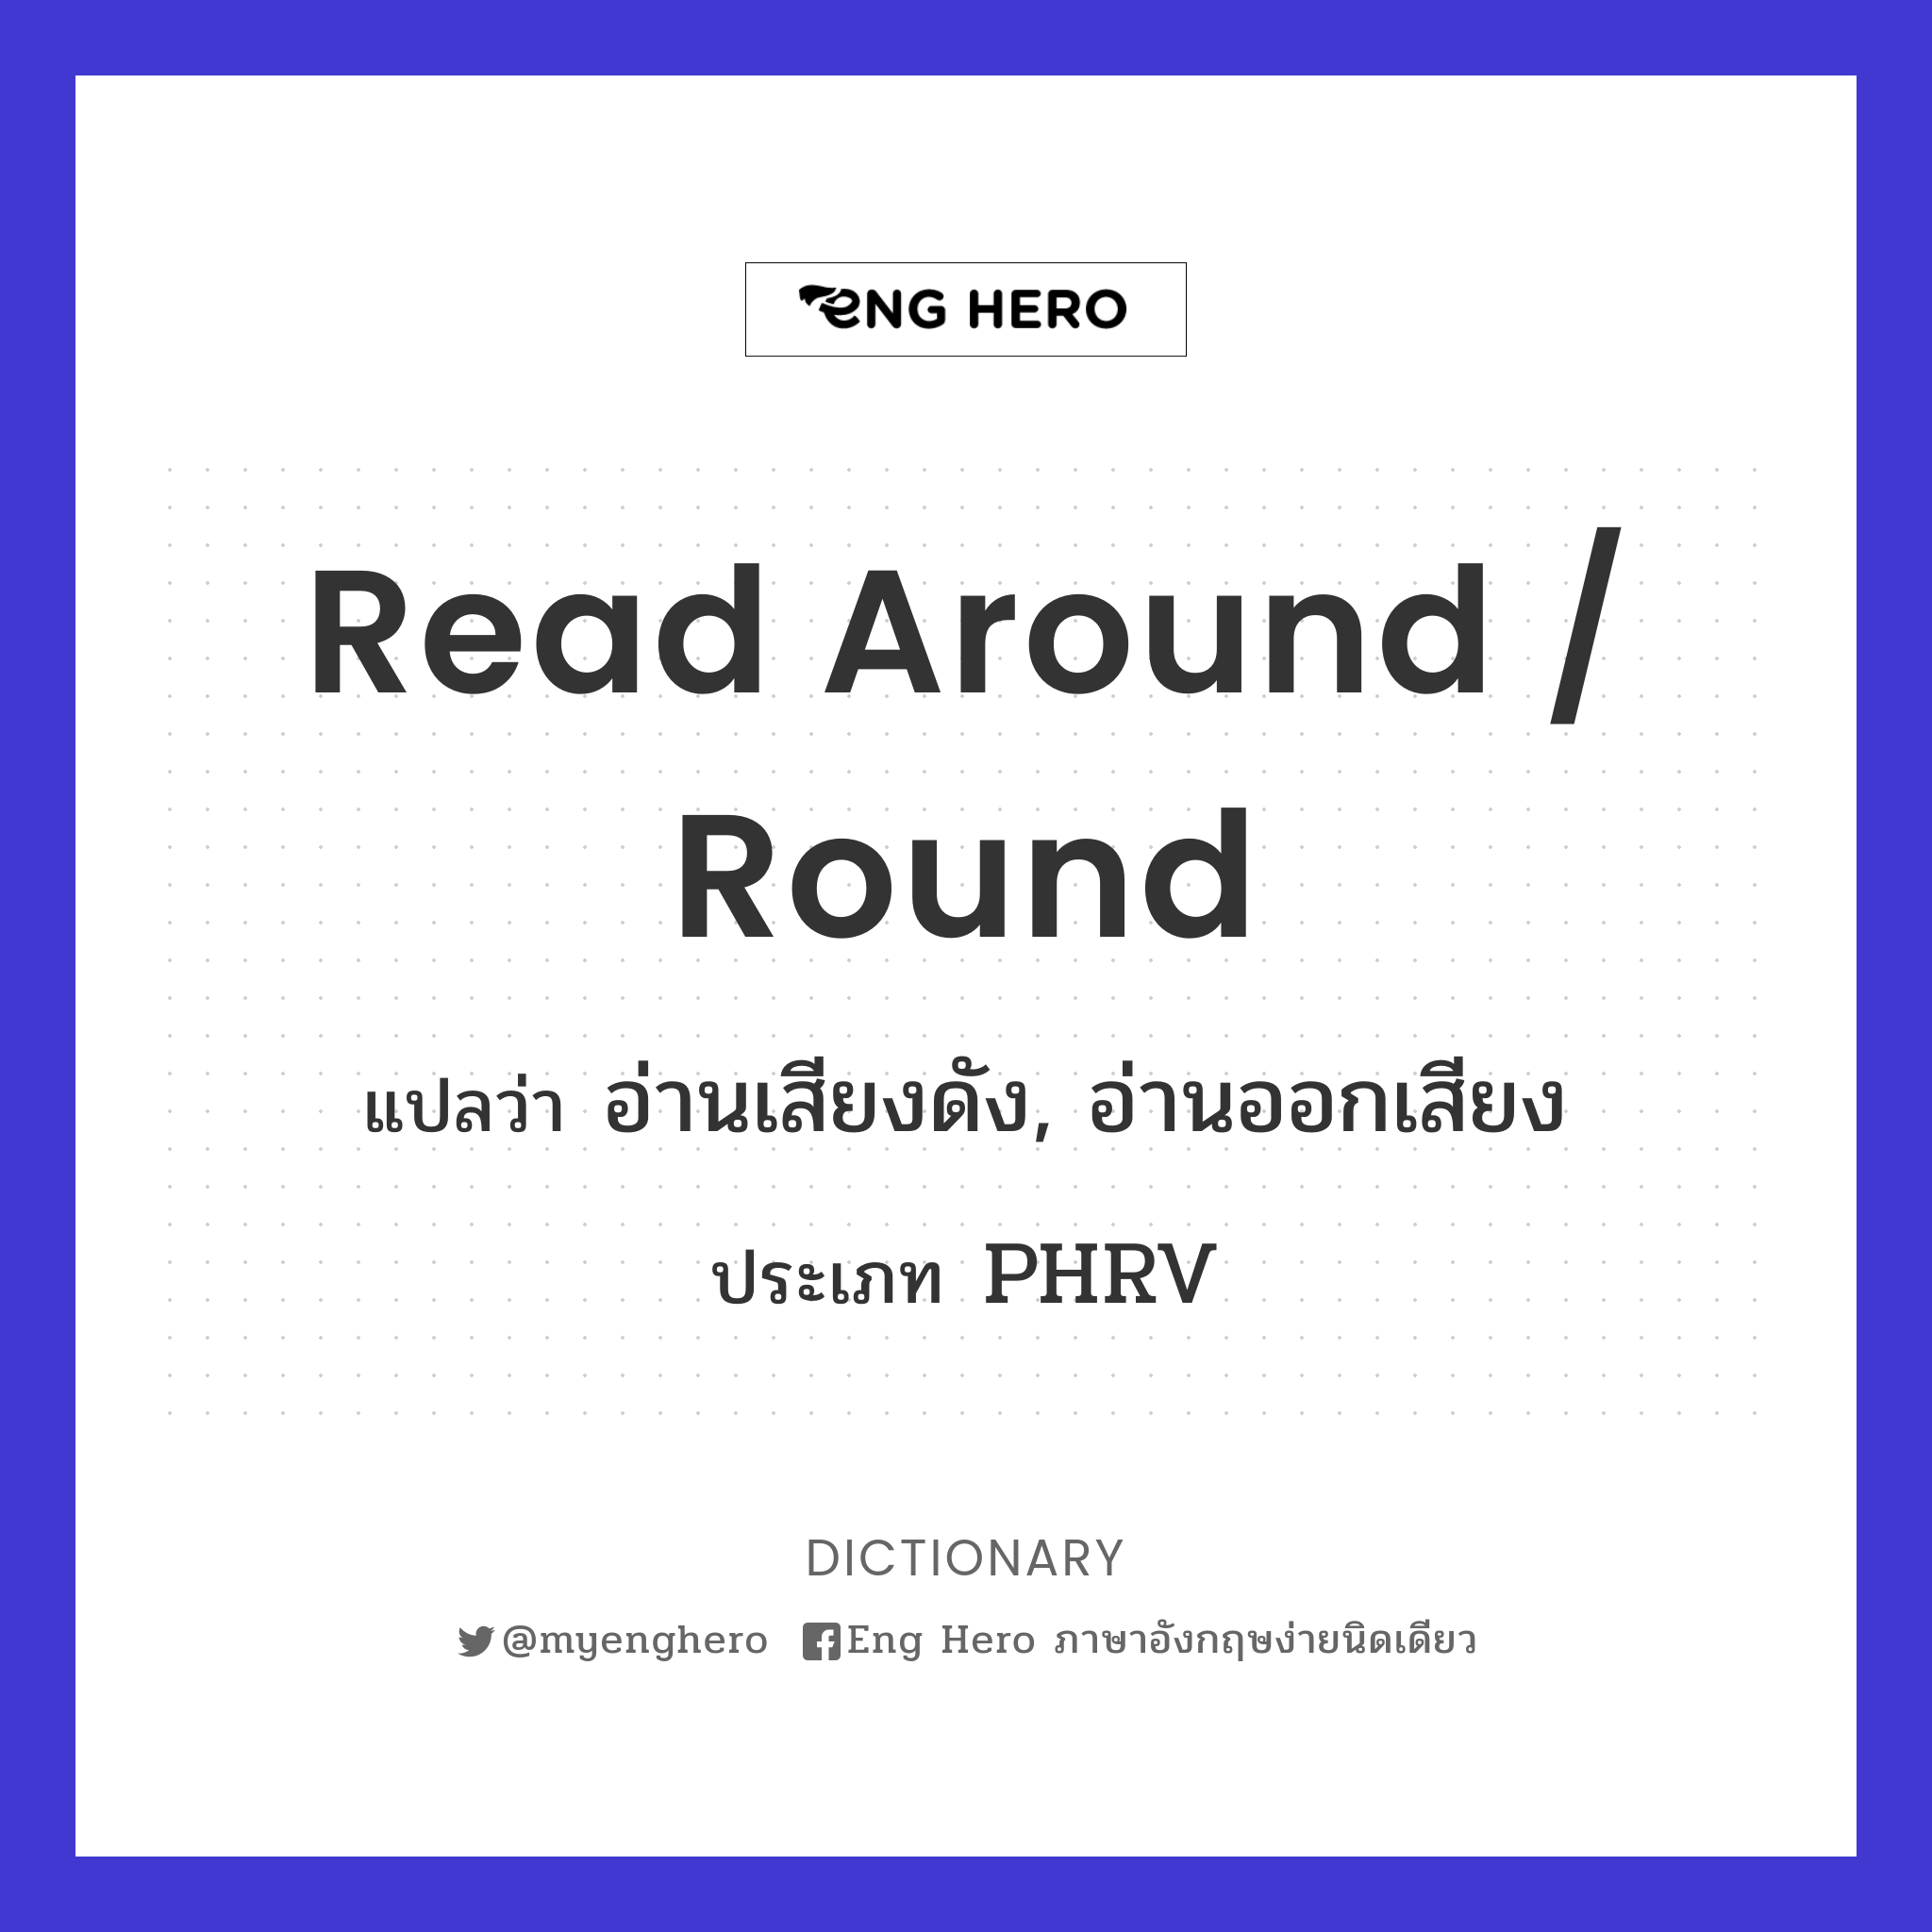 read around / round